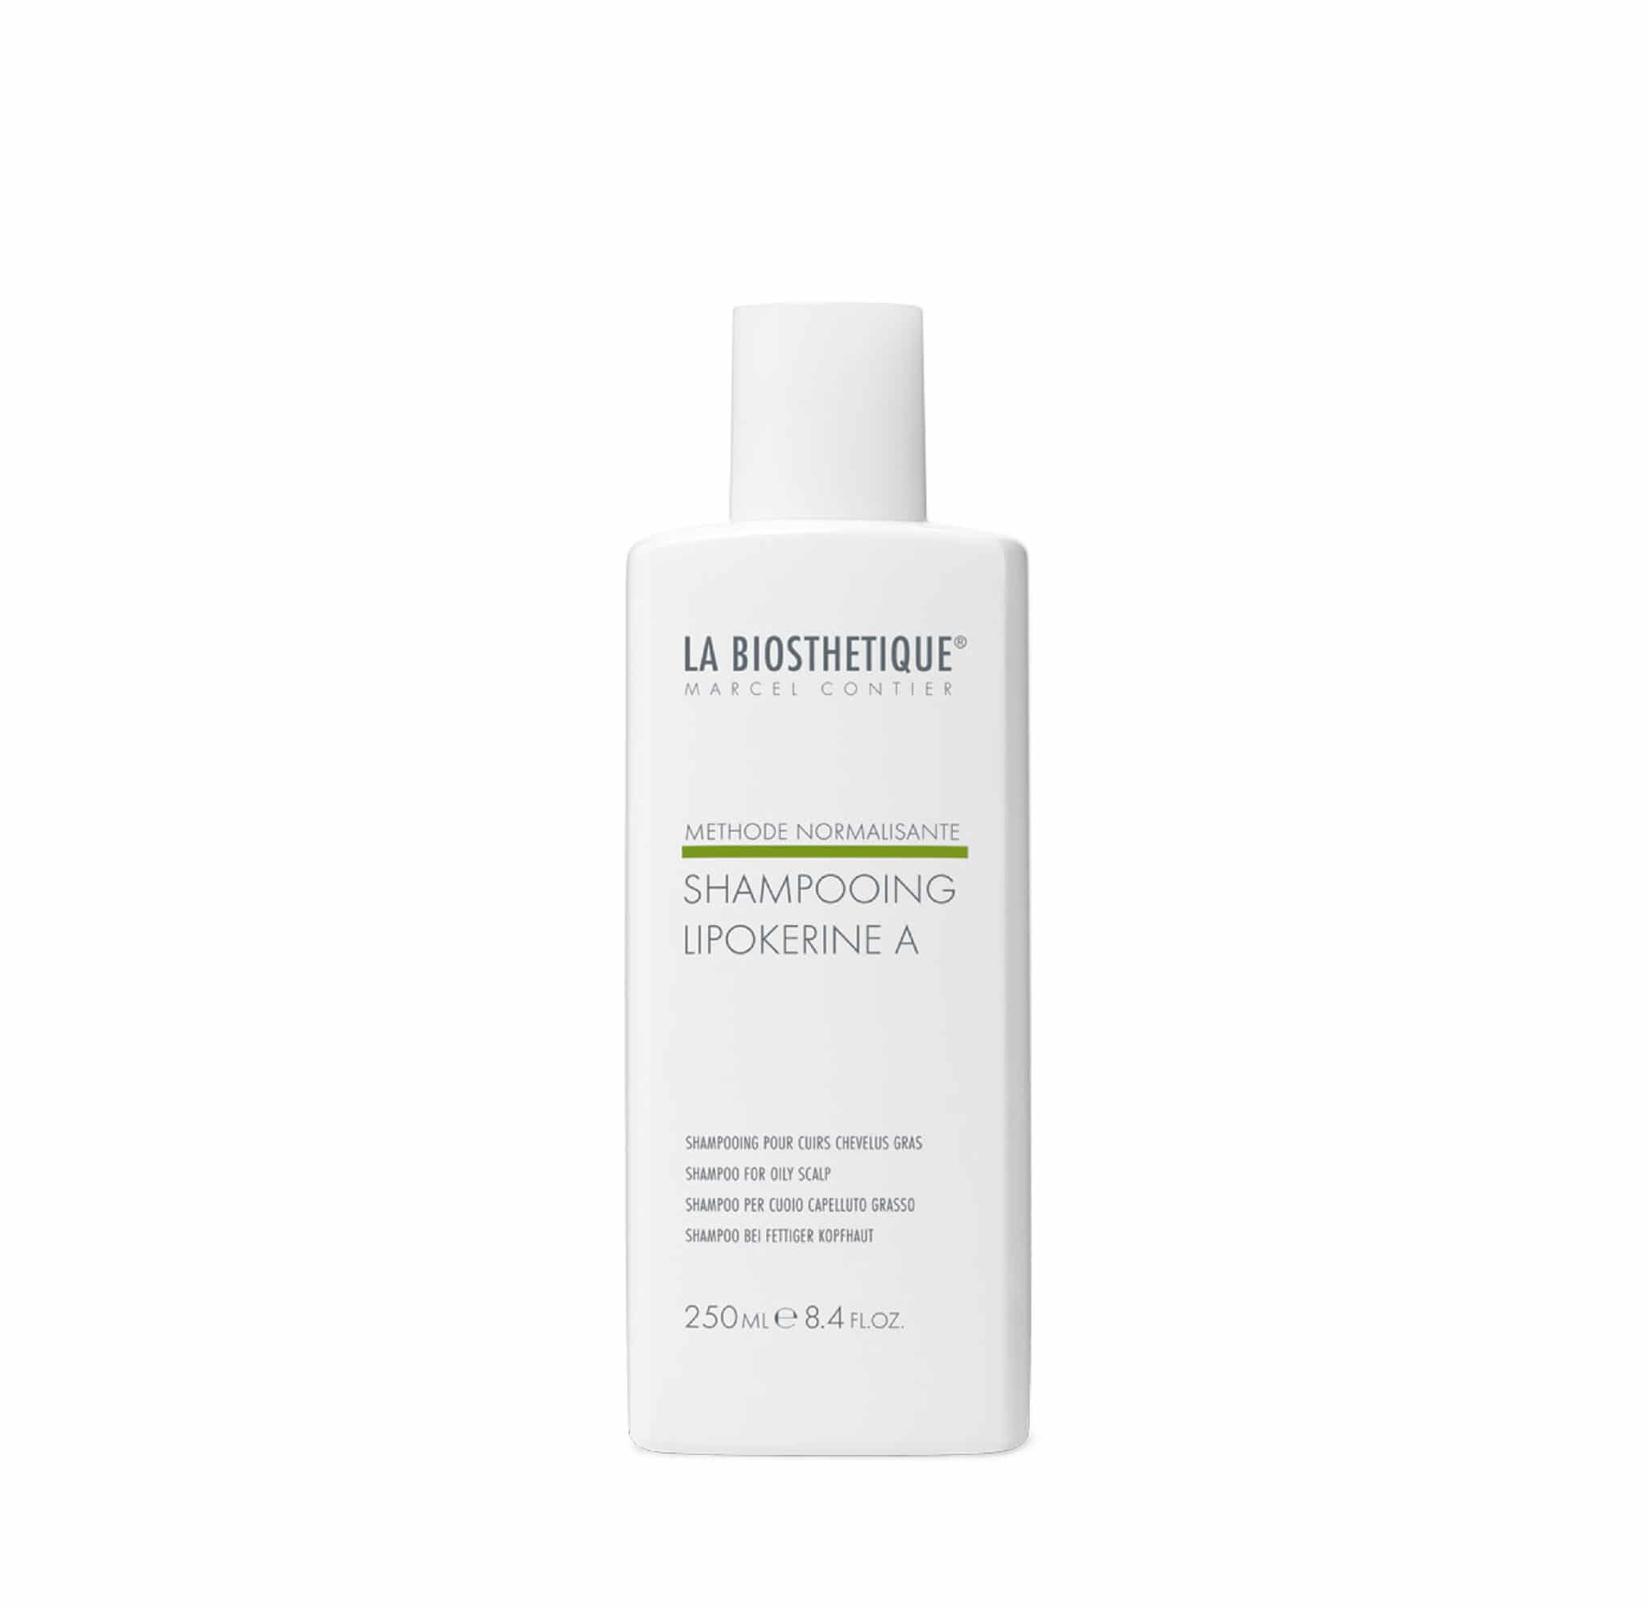 La Biosthetique Šampon za masno vlasište Shampooing Lipokerine A 250 ml